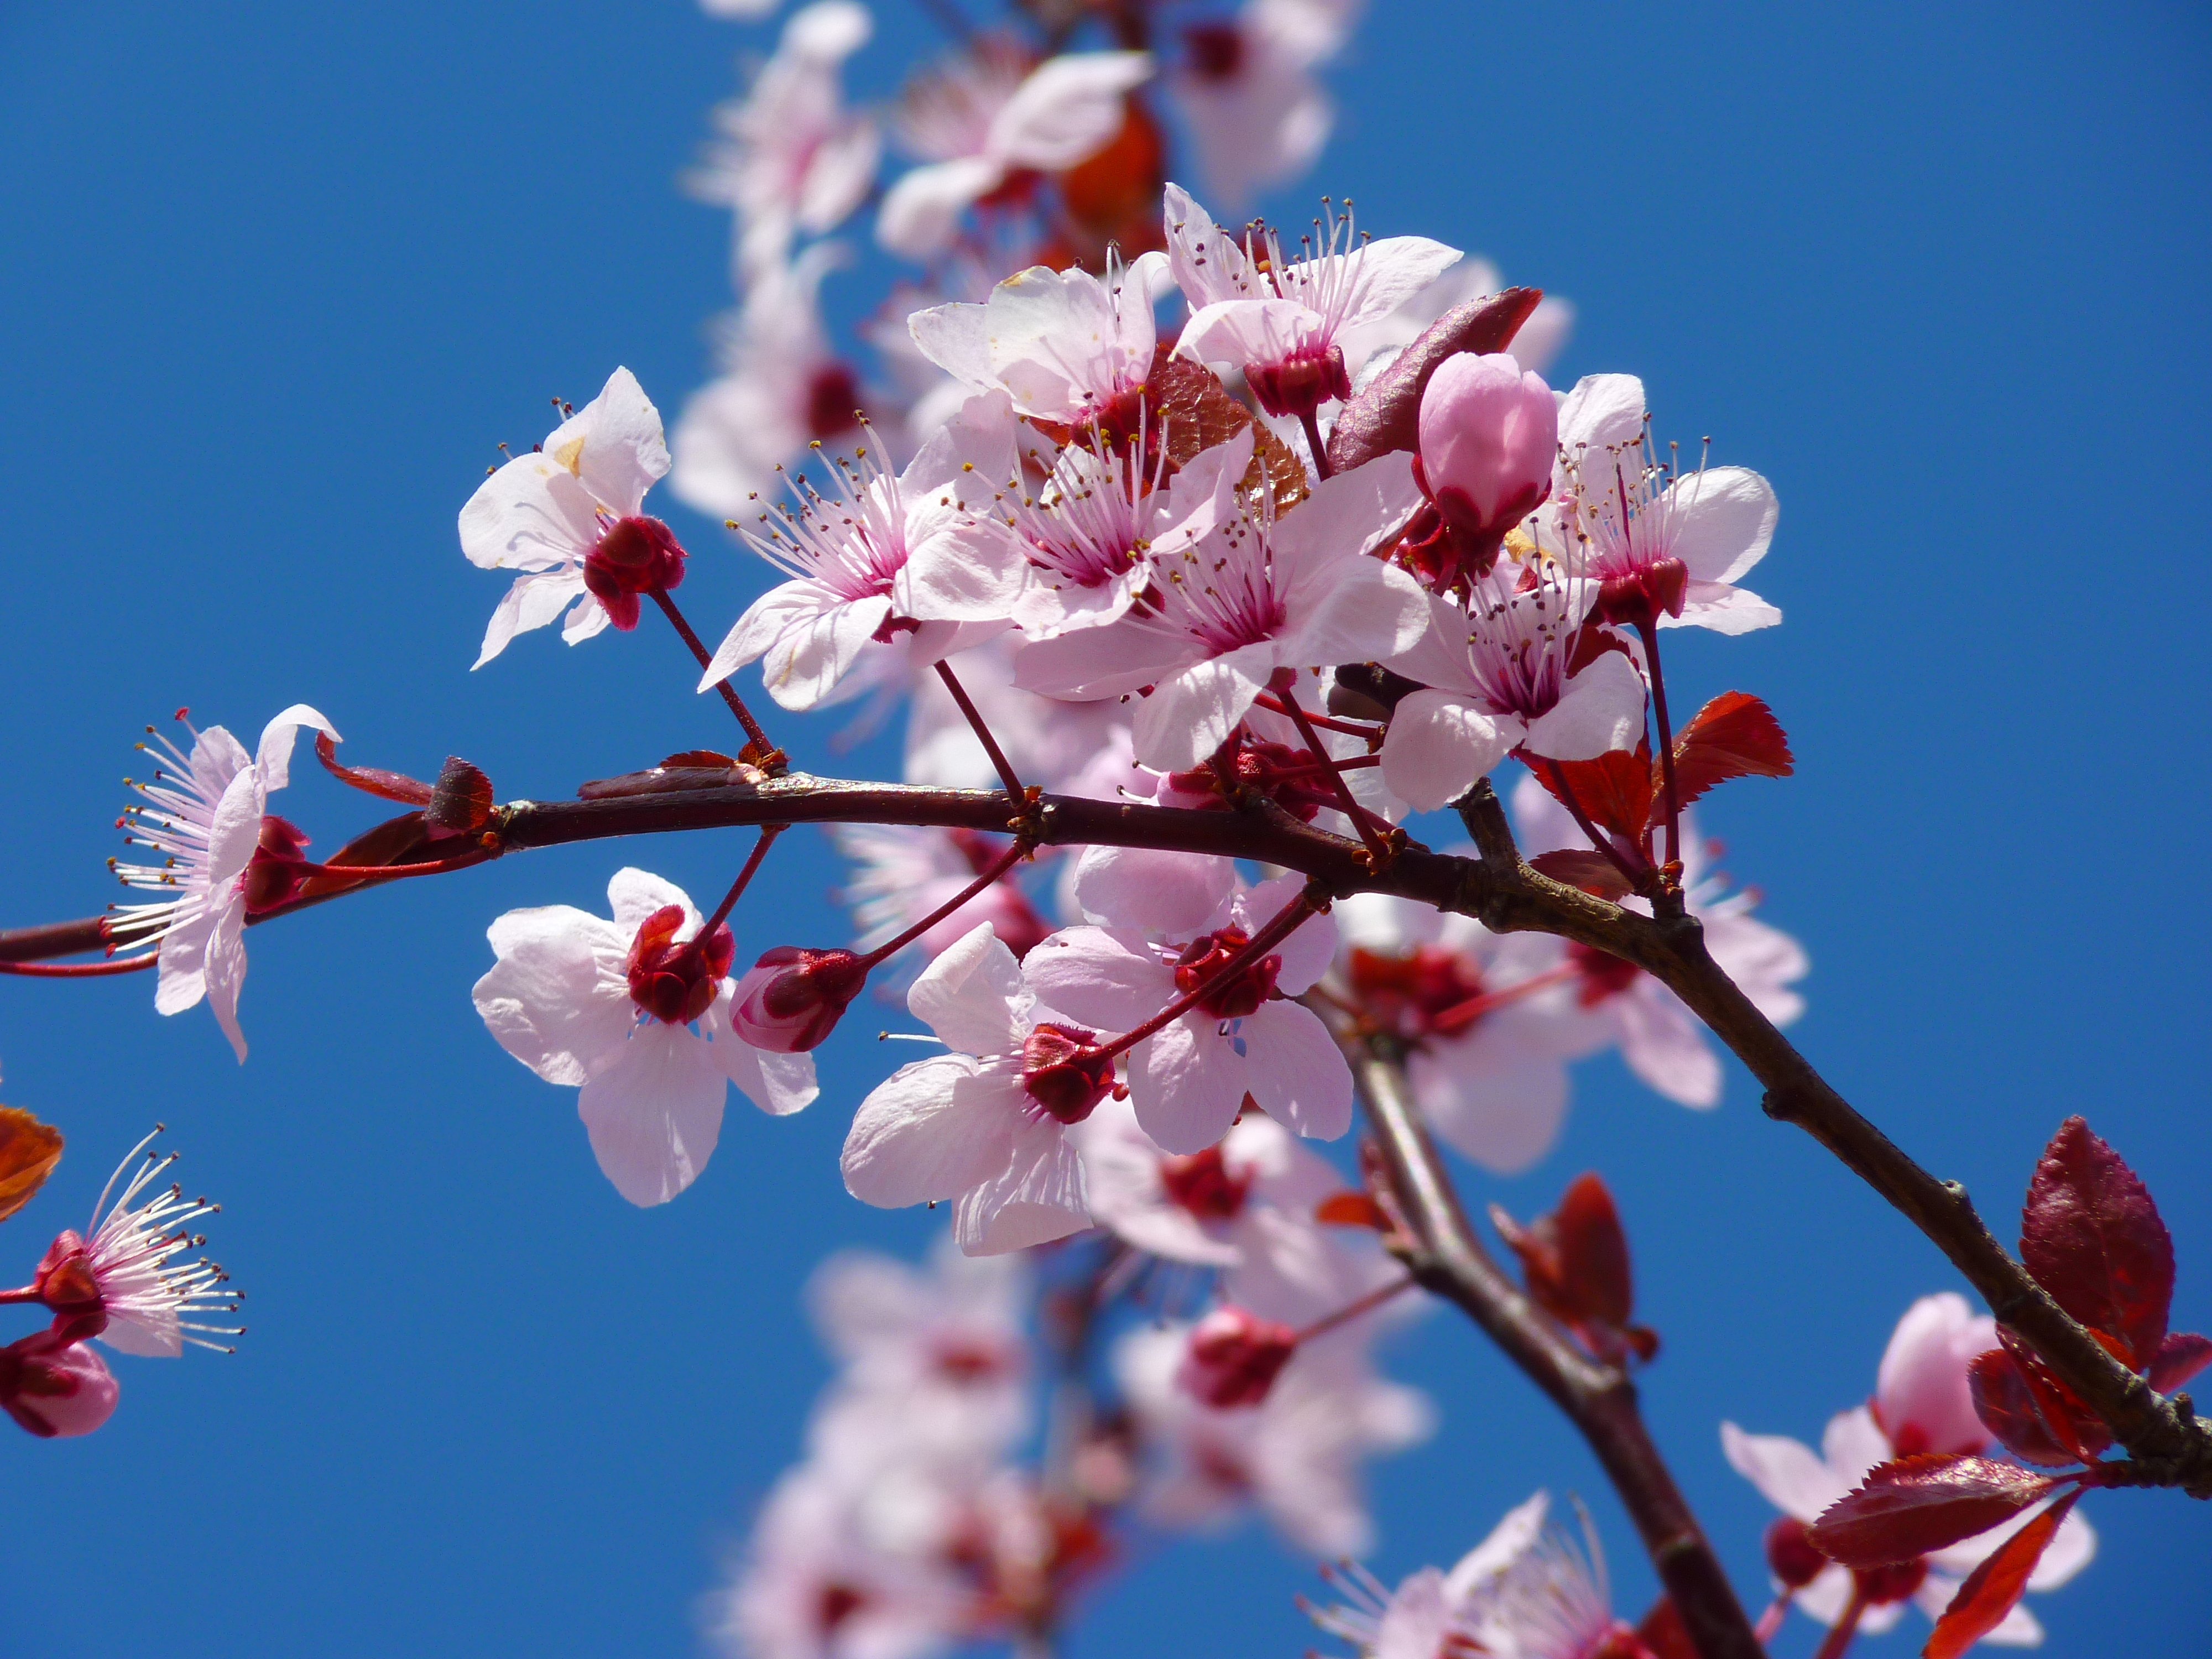 Cherry Blossom Festival - South Coast Botanic Garden Foundation